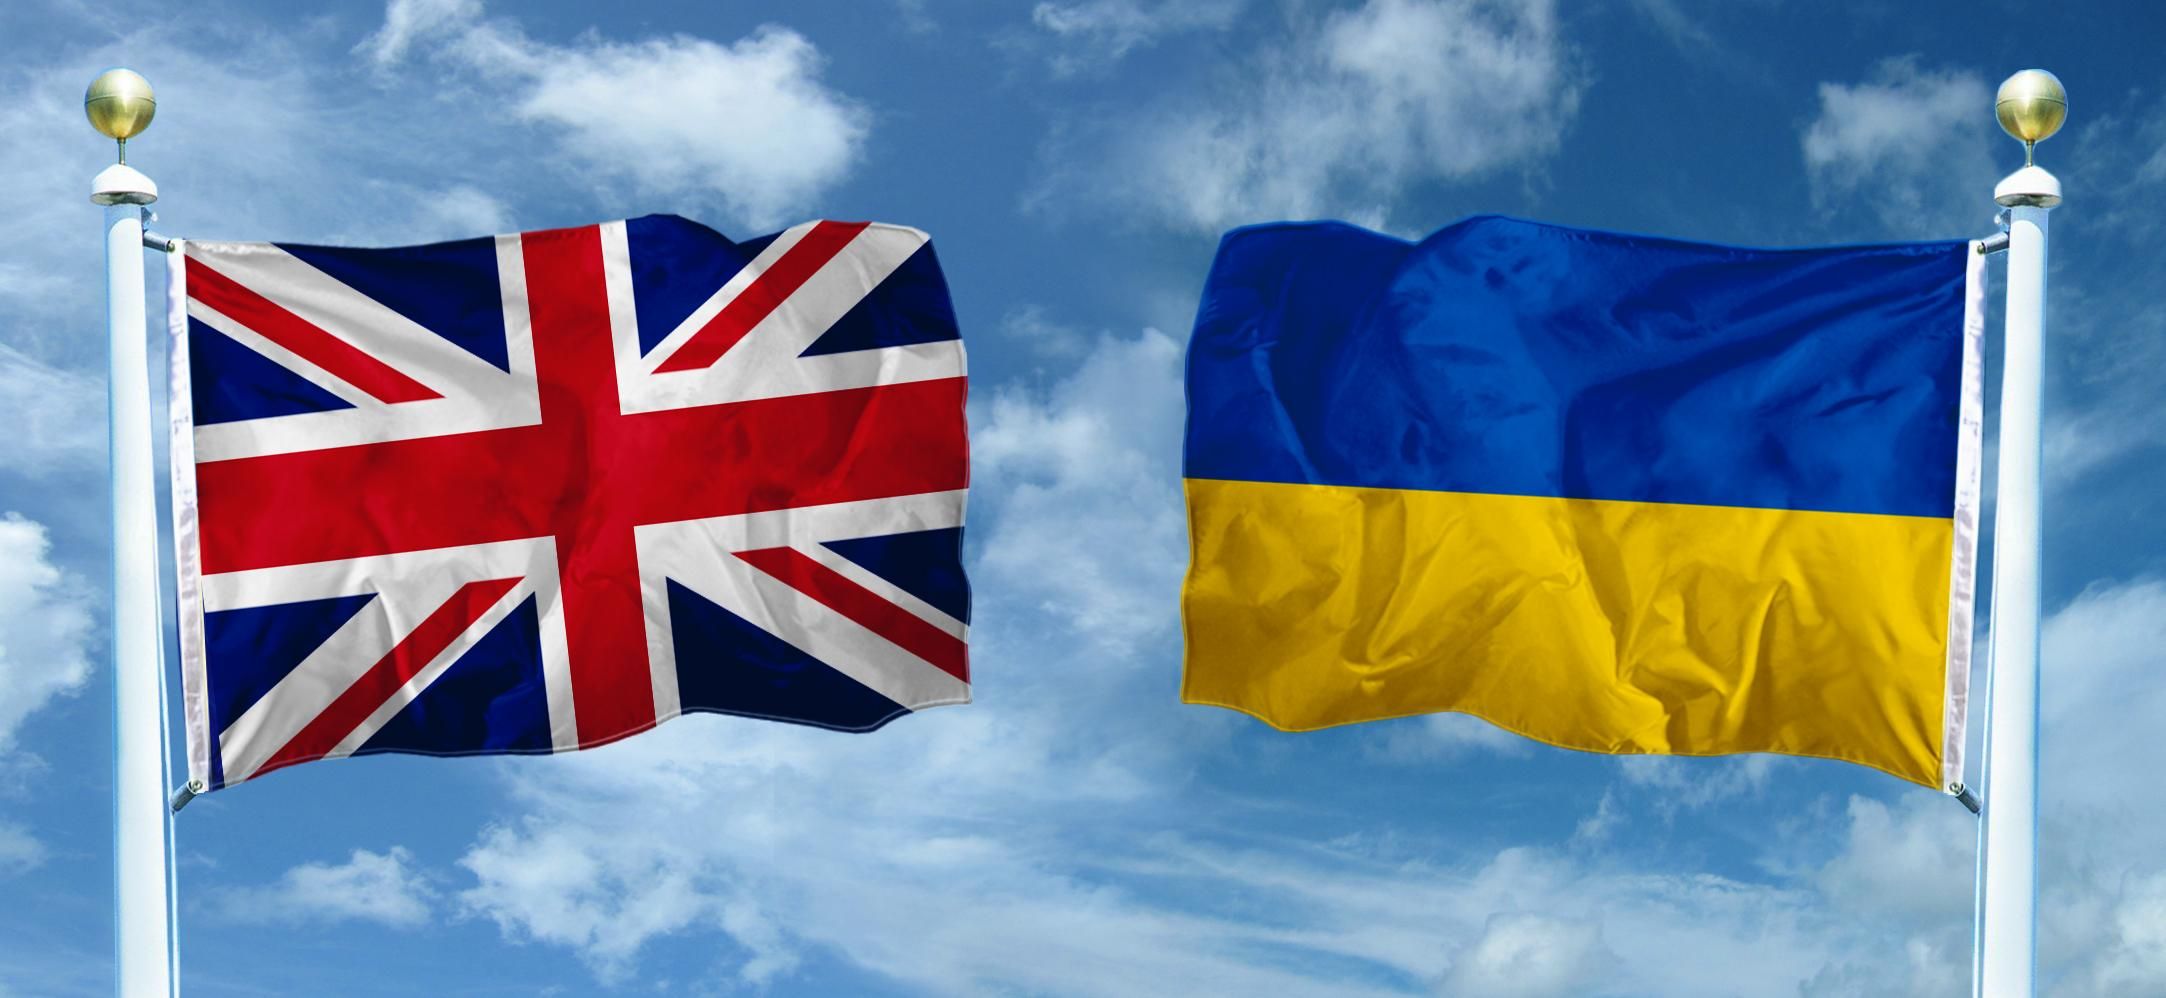 Украина начинает переговоры о зоне свободной торговли еще одной топ-страной